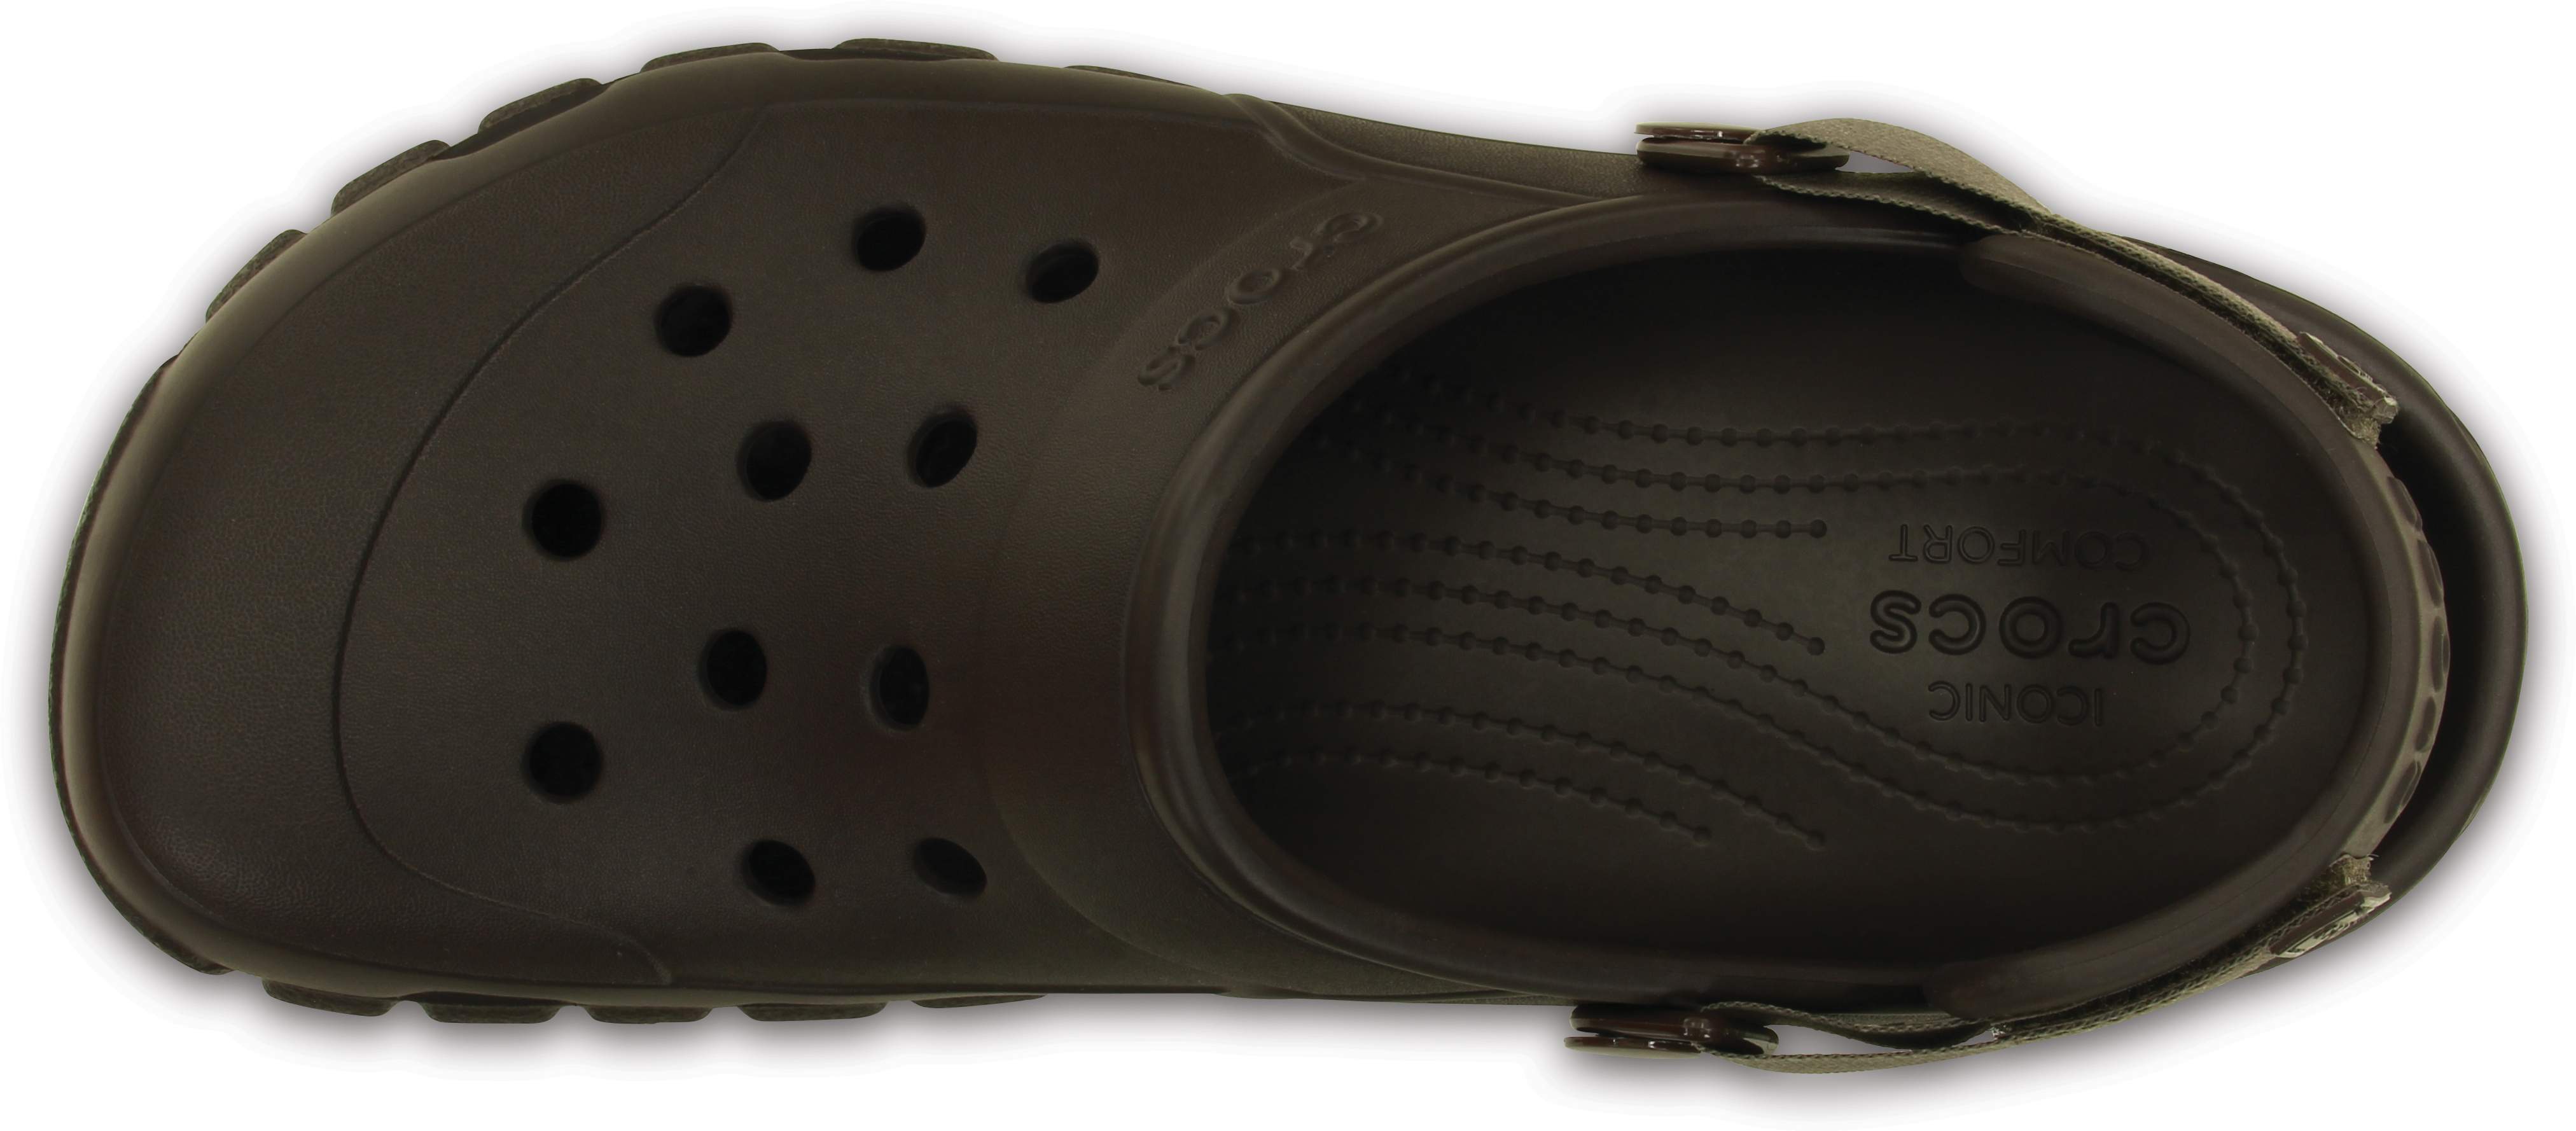 crocs offroad sport clog black